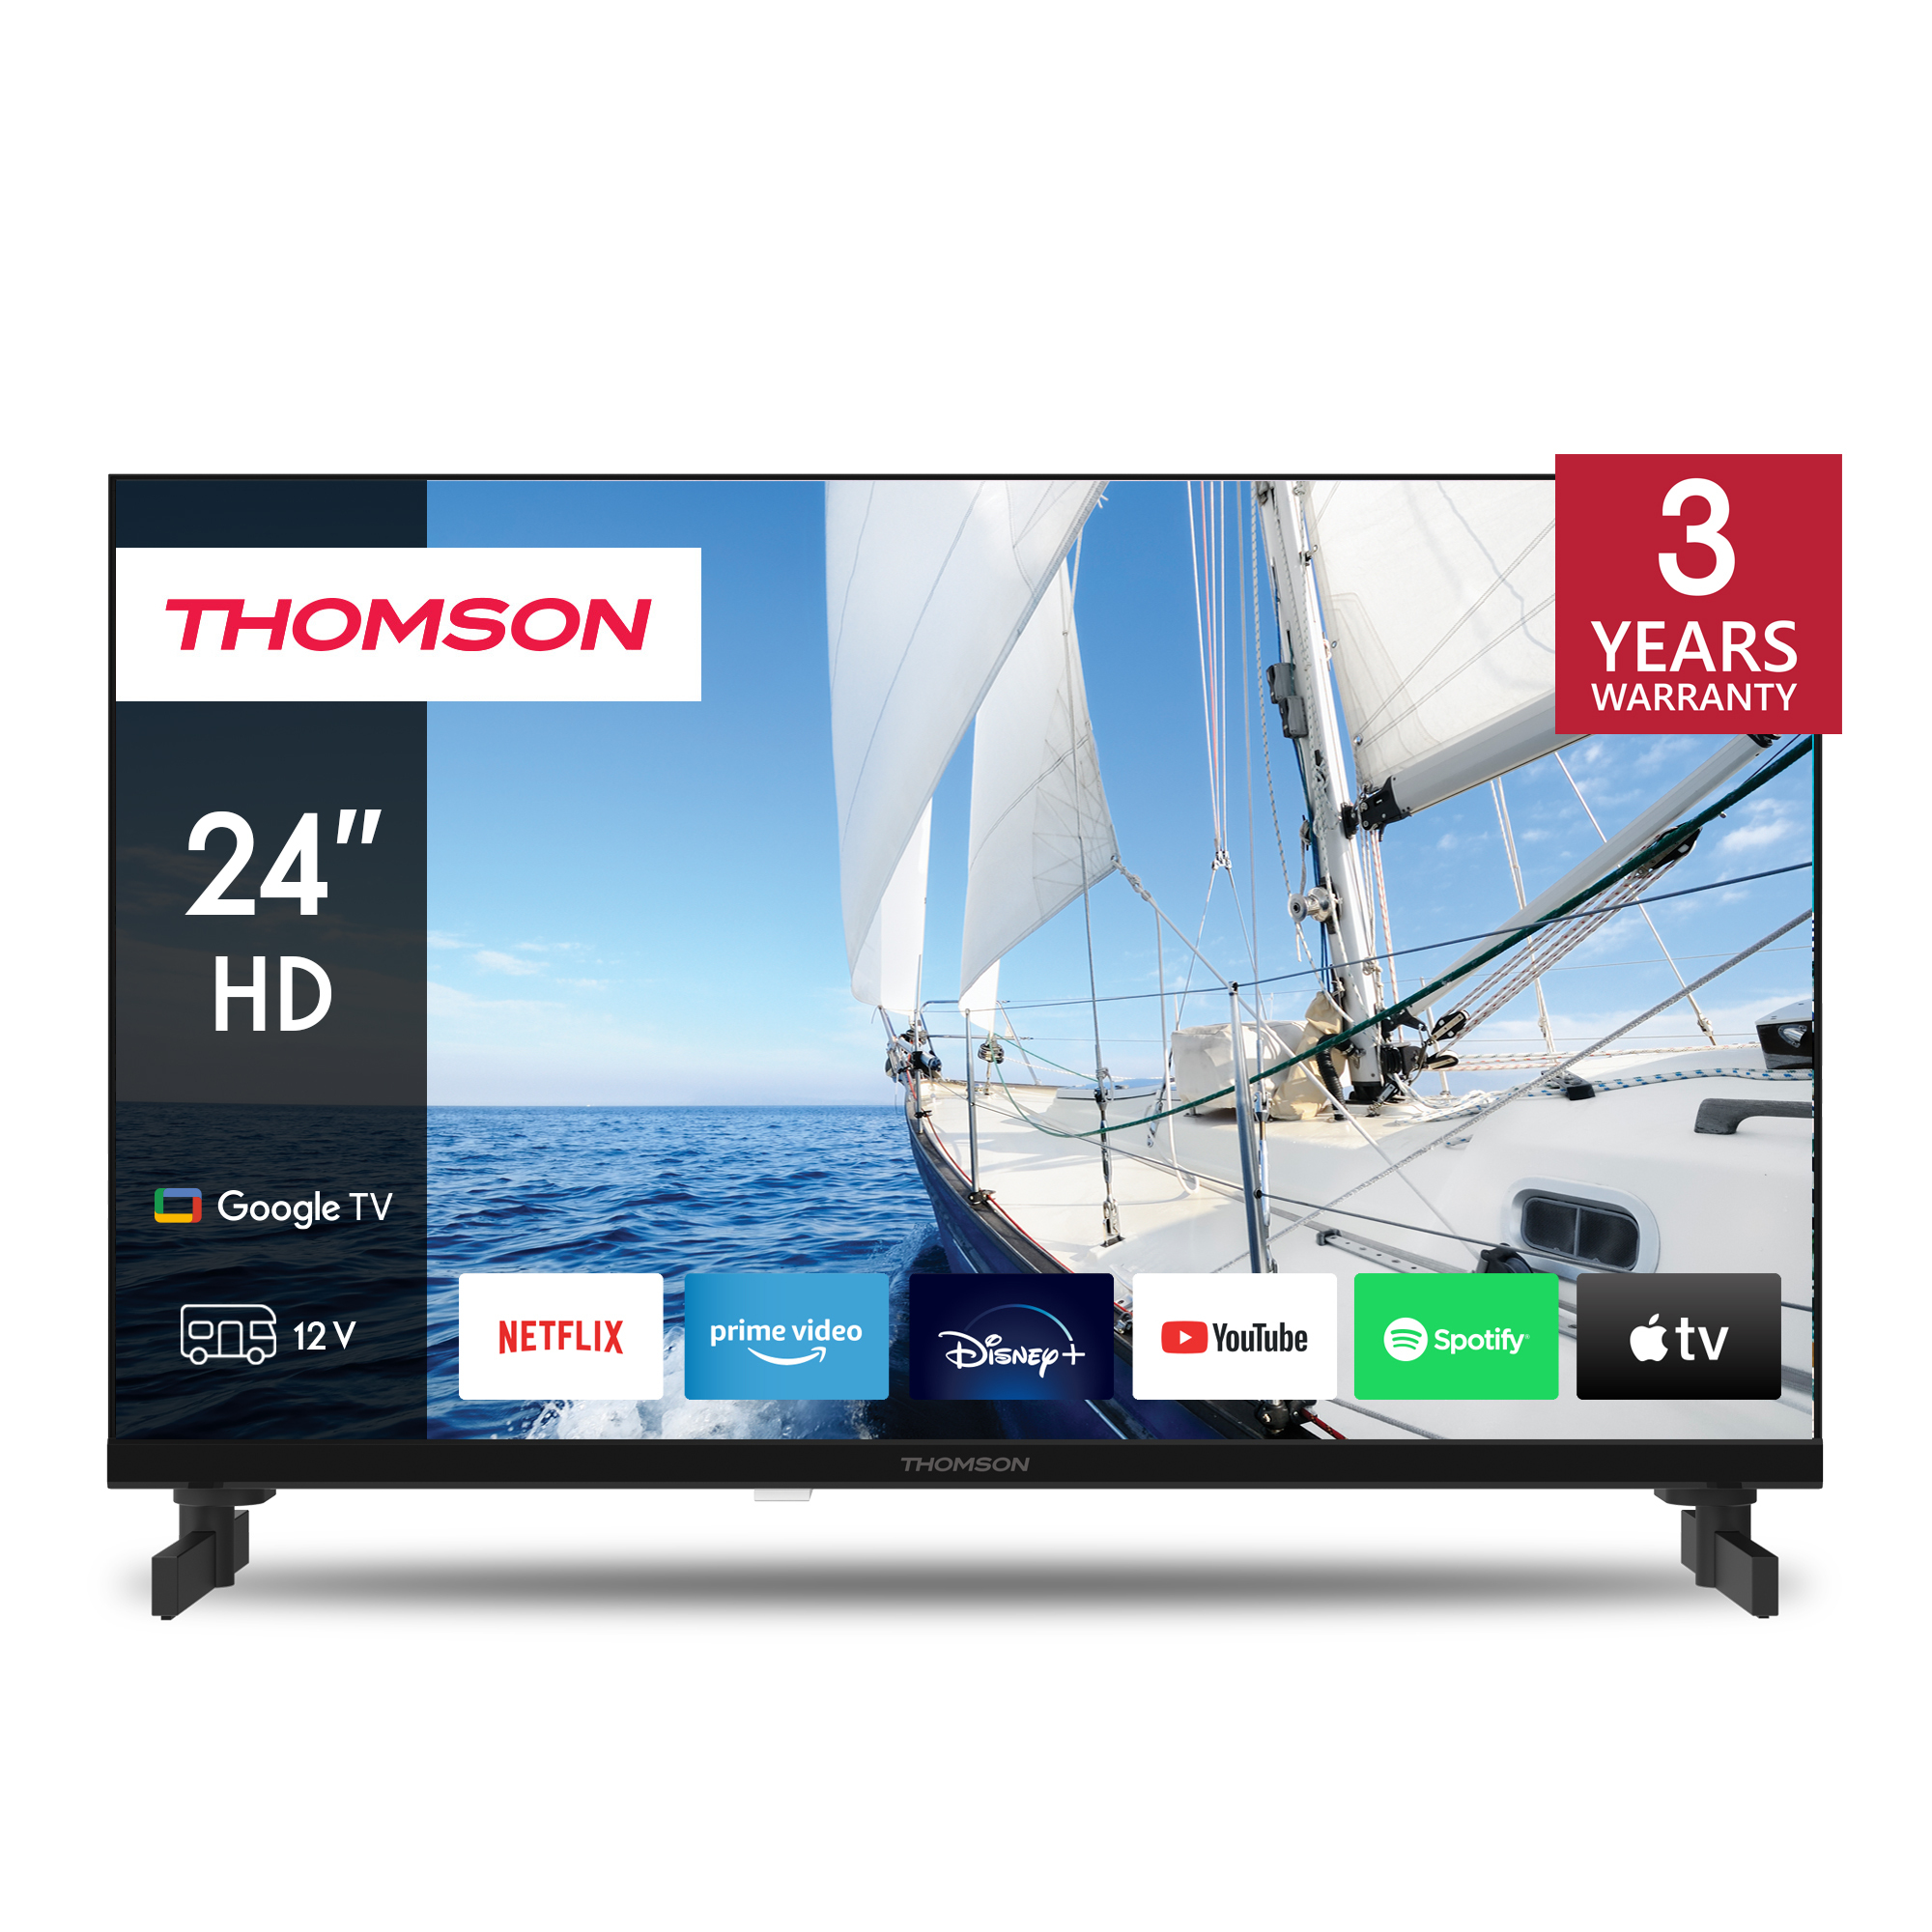 Thomson 24HG2S14C TV